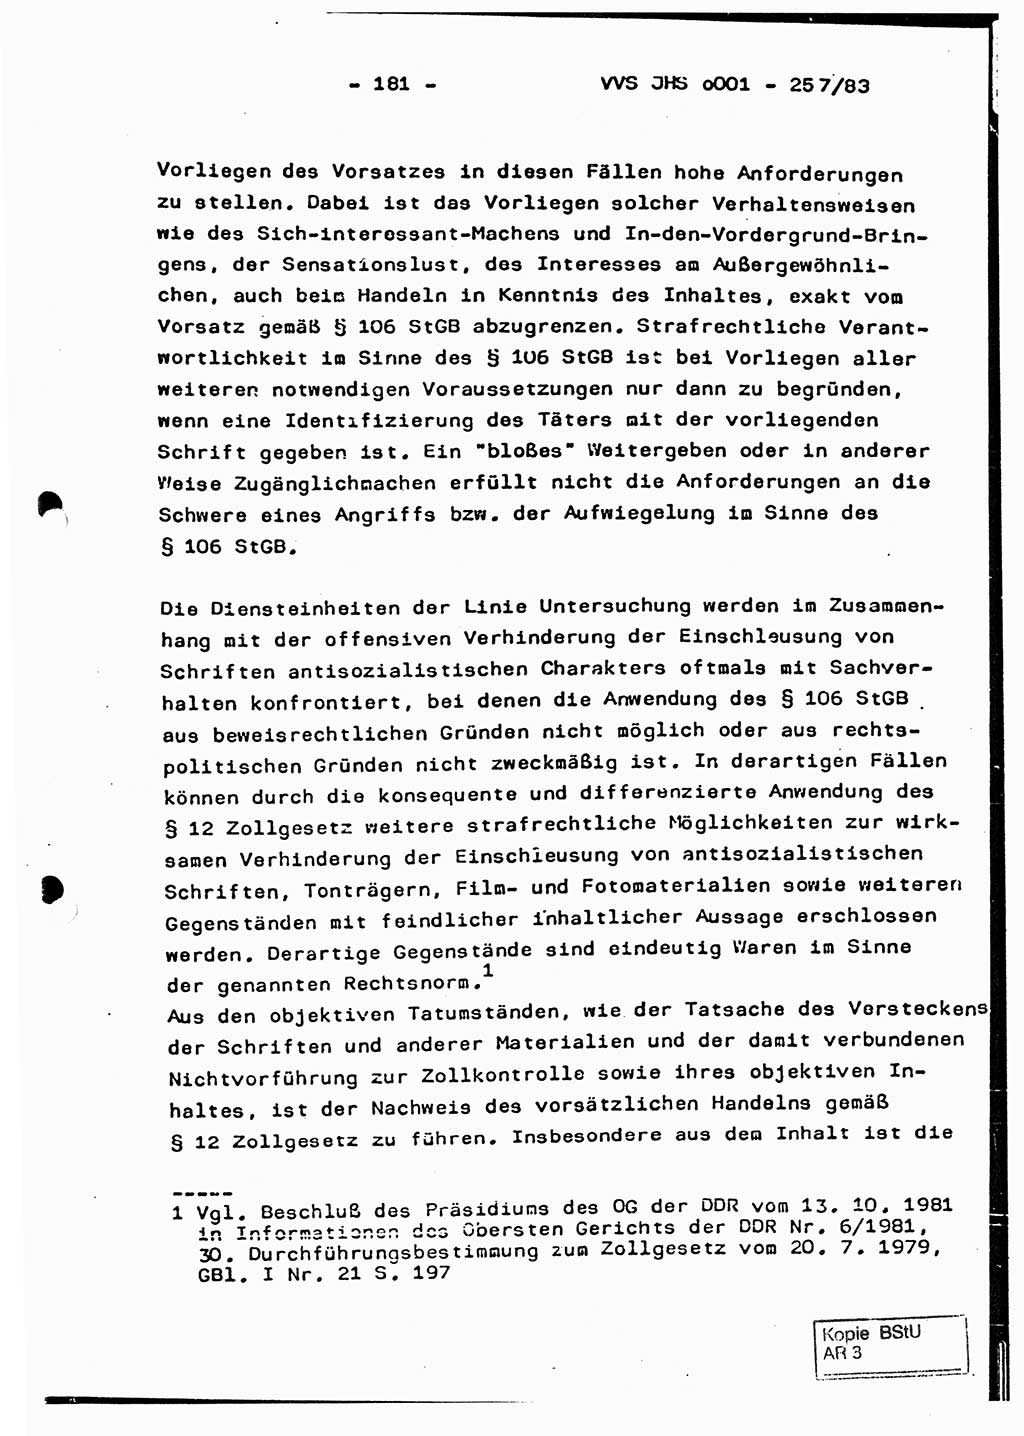 Dissertation, Oberst Helmut Lubas (BV Mdg.), Oberstleutnant Manfred Eschberger (HA IX), Oberleutnant Hans-Jürgen Ludwig (JHS), Ministerium für Staatssicherheit (MfS) [Deutsche Demokratische Republik (DDR)], Juristische Hochschule (JHS), Vertrauliche Verschlußsache (VVS) o001-257/83, Potsdam 1983, Seite 181 (Diss. MfS DDR JHS VVS o001-257/83 1983, S. 181)